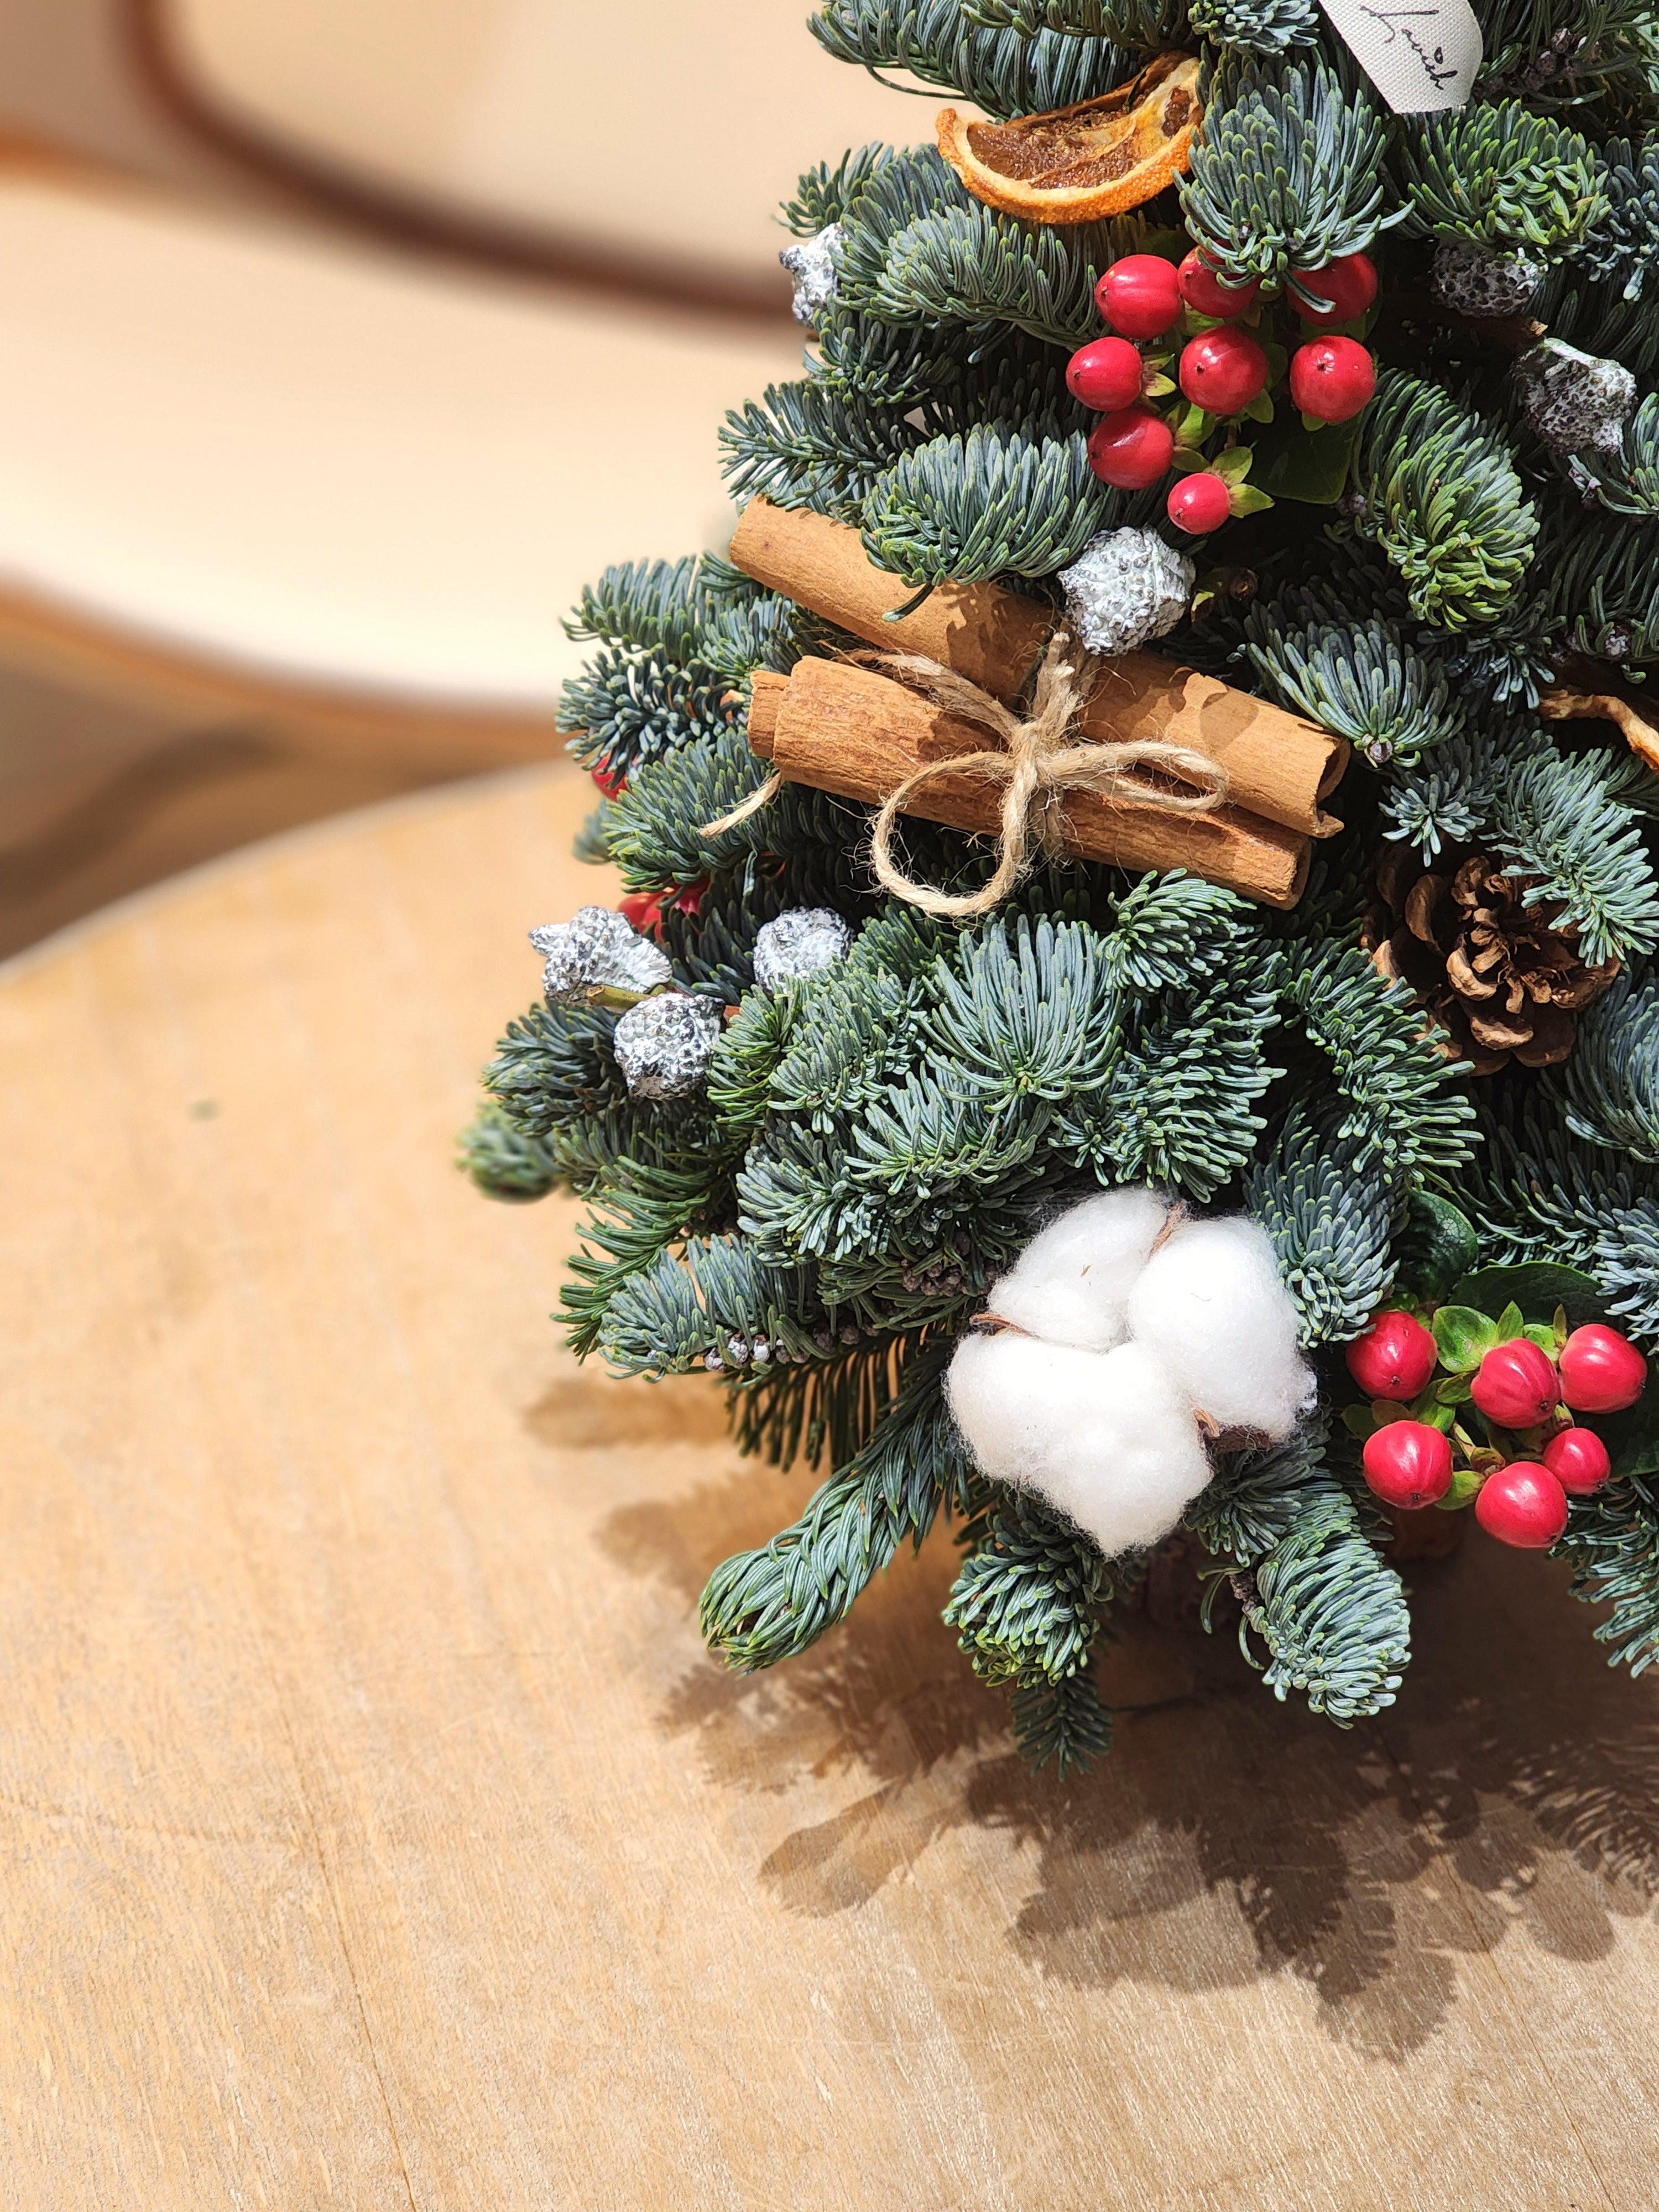 Lavish - Handmade Christmas Tree - Lavish Florist